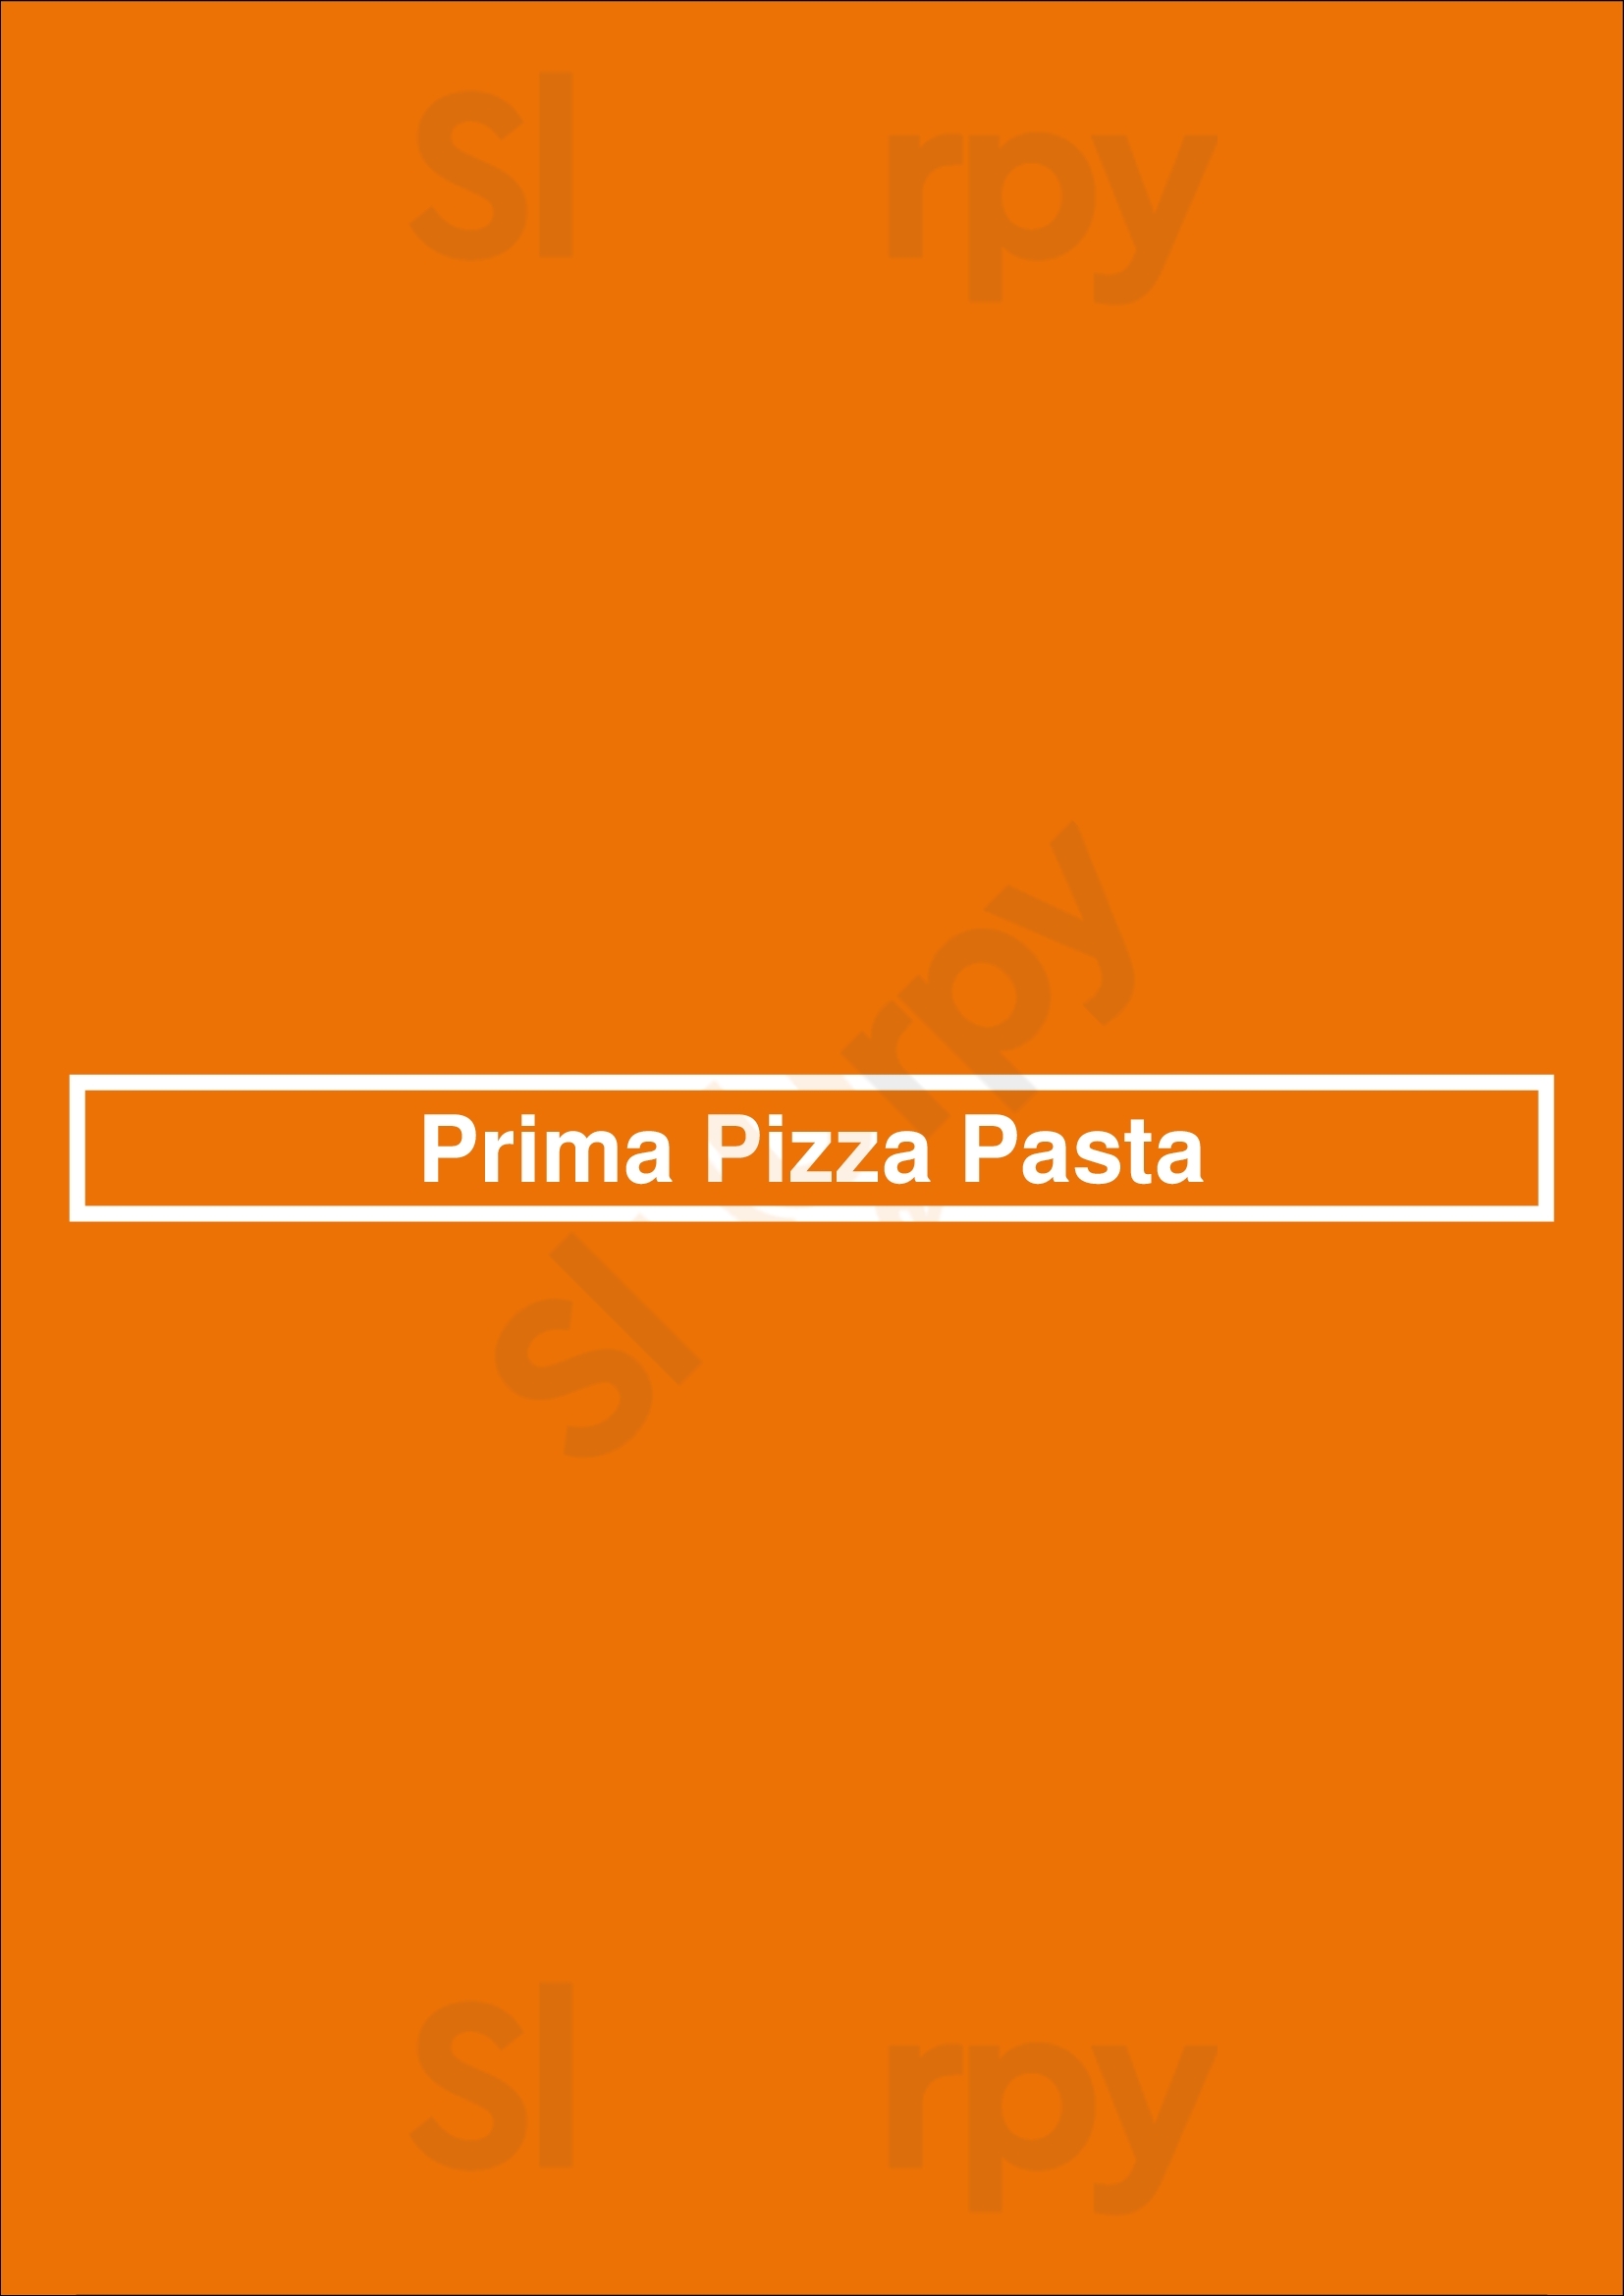 Prima Pizza Pasta Buffalo Menu - 1